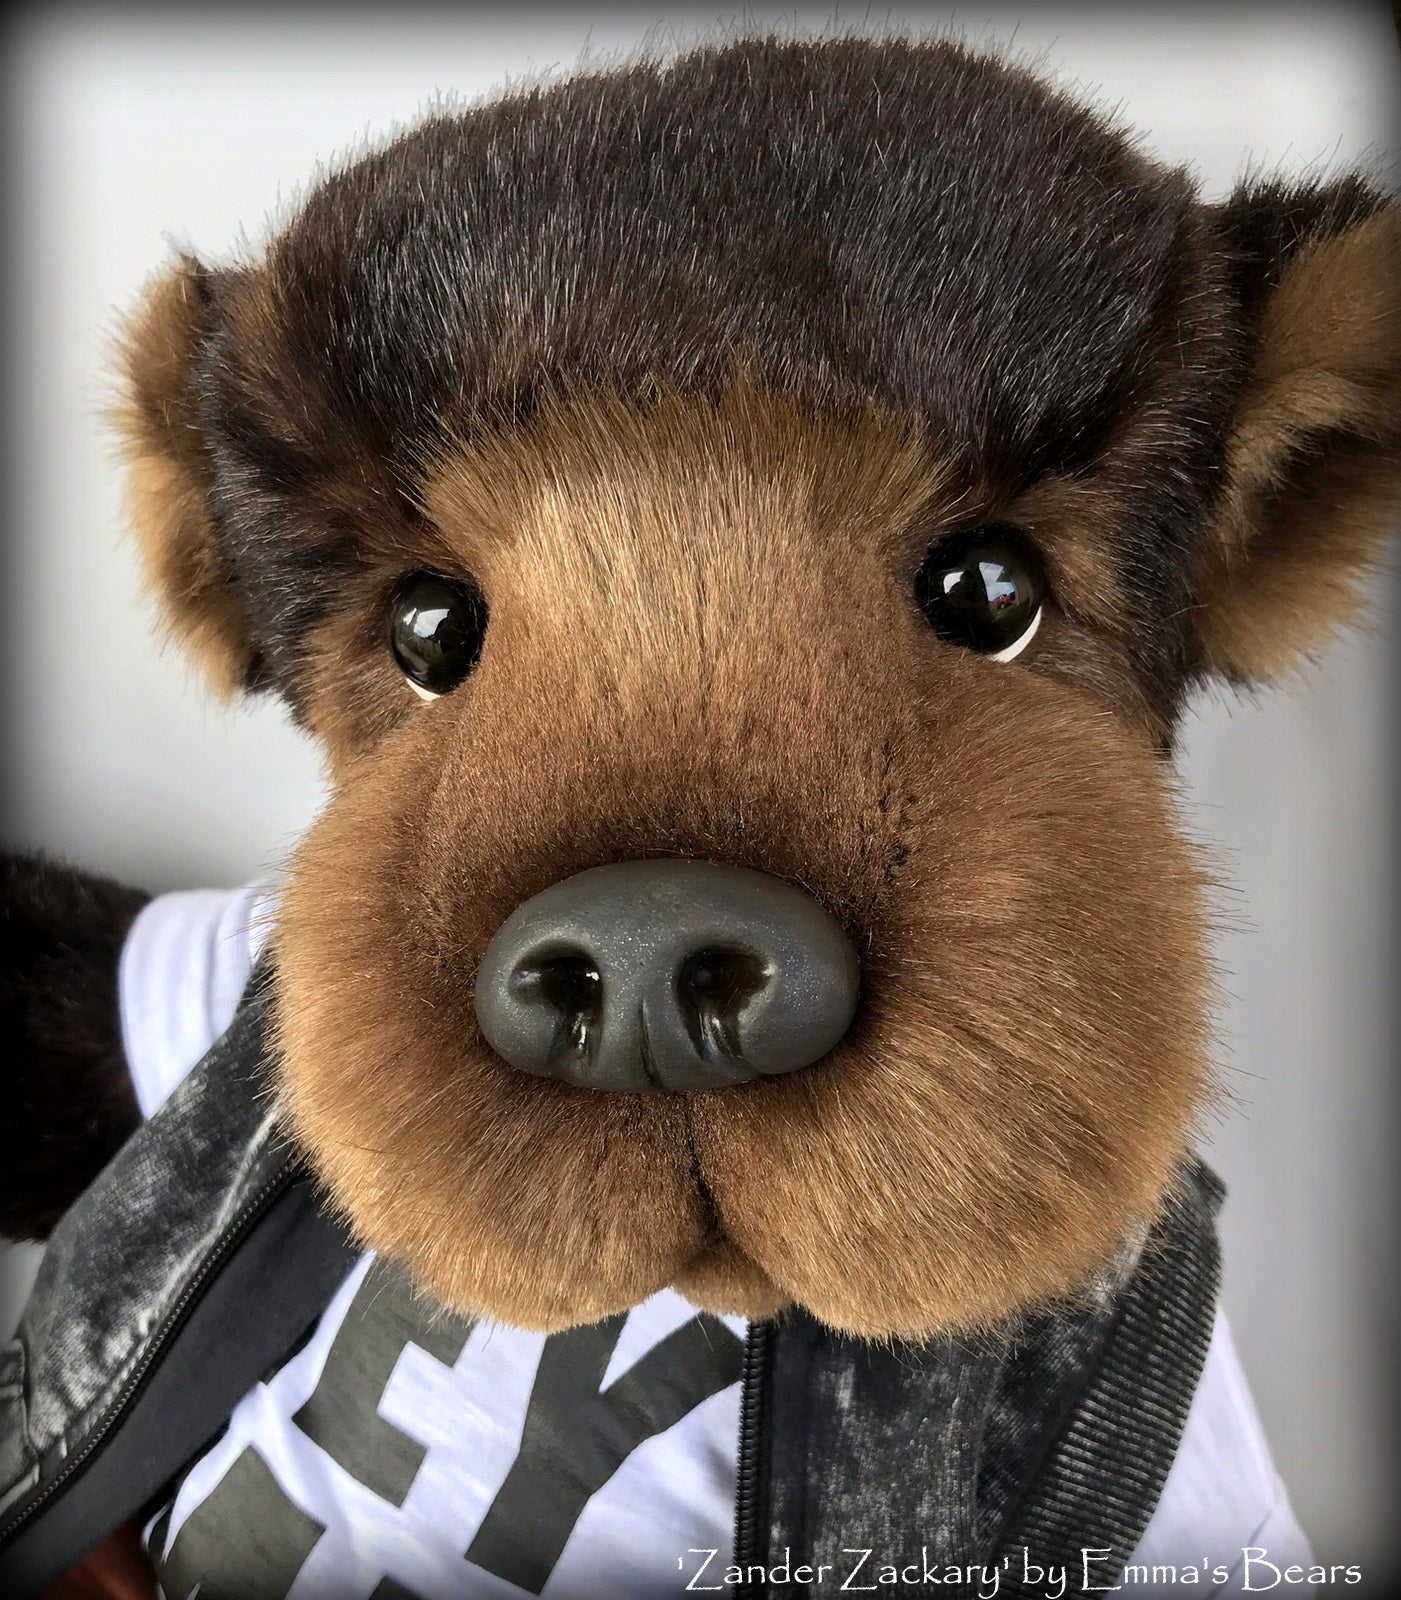 Zander Zackary - 21in TISSAVEL faux fur Artist toddler style Bear by Emmas Bears - OOAK